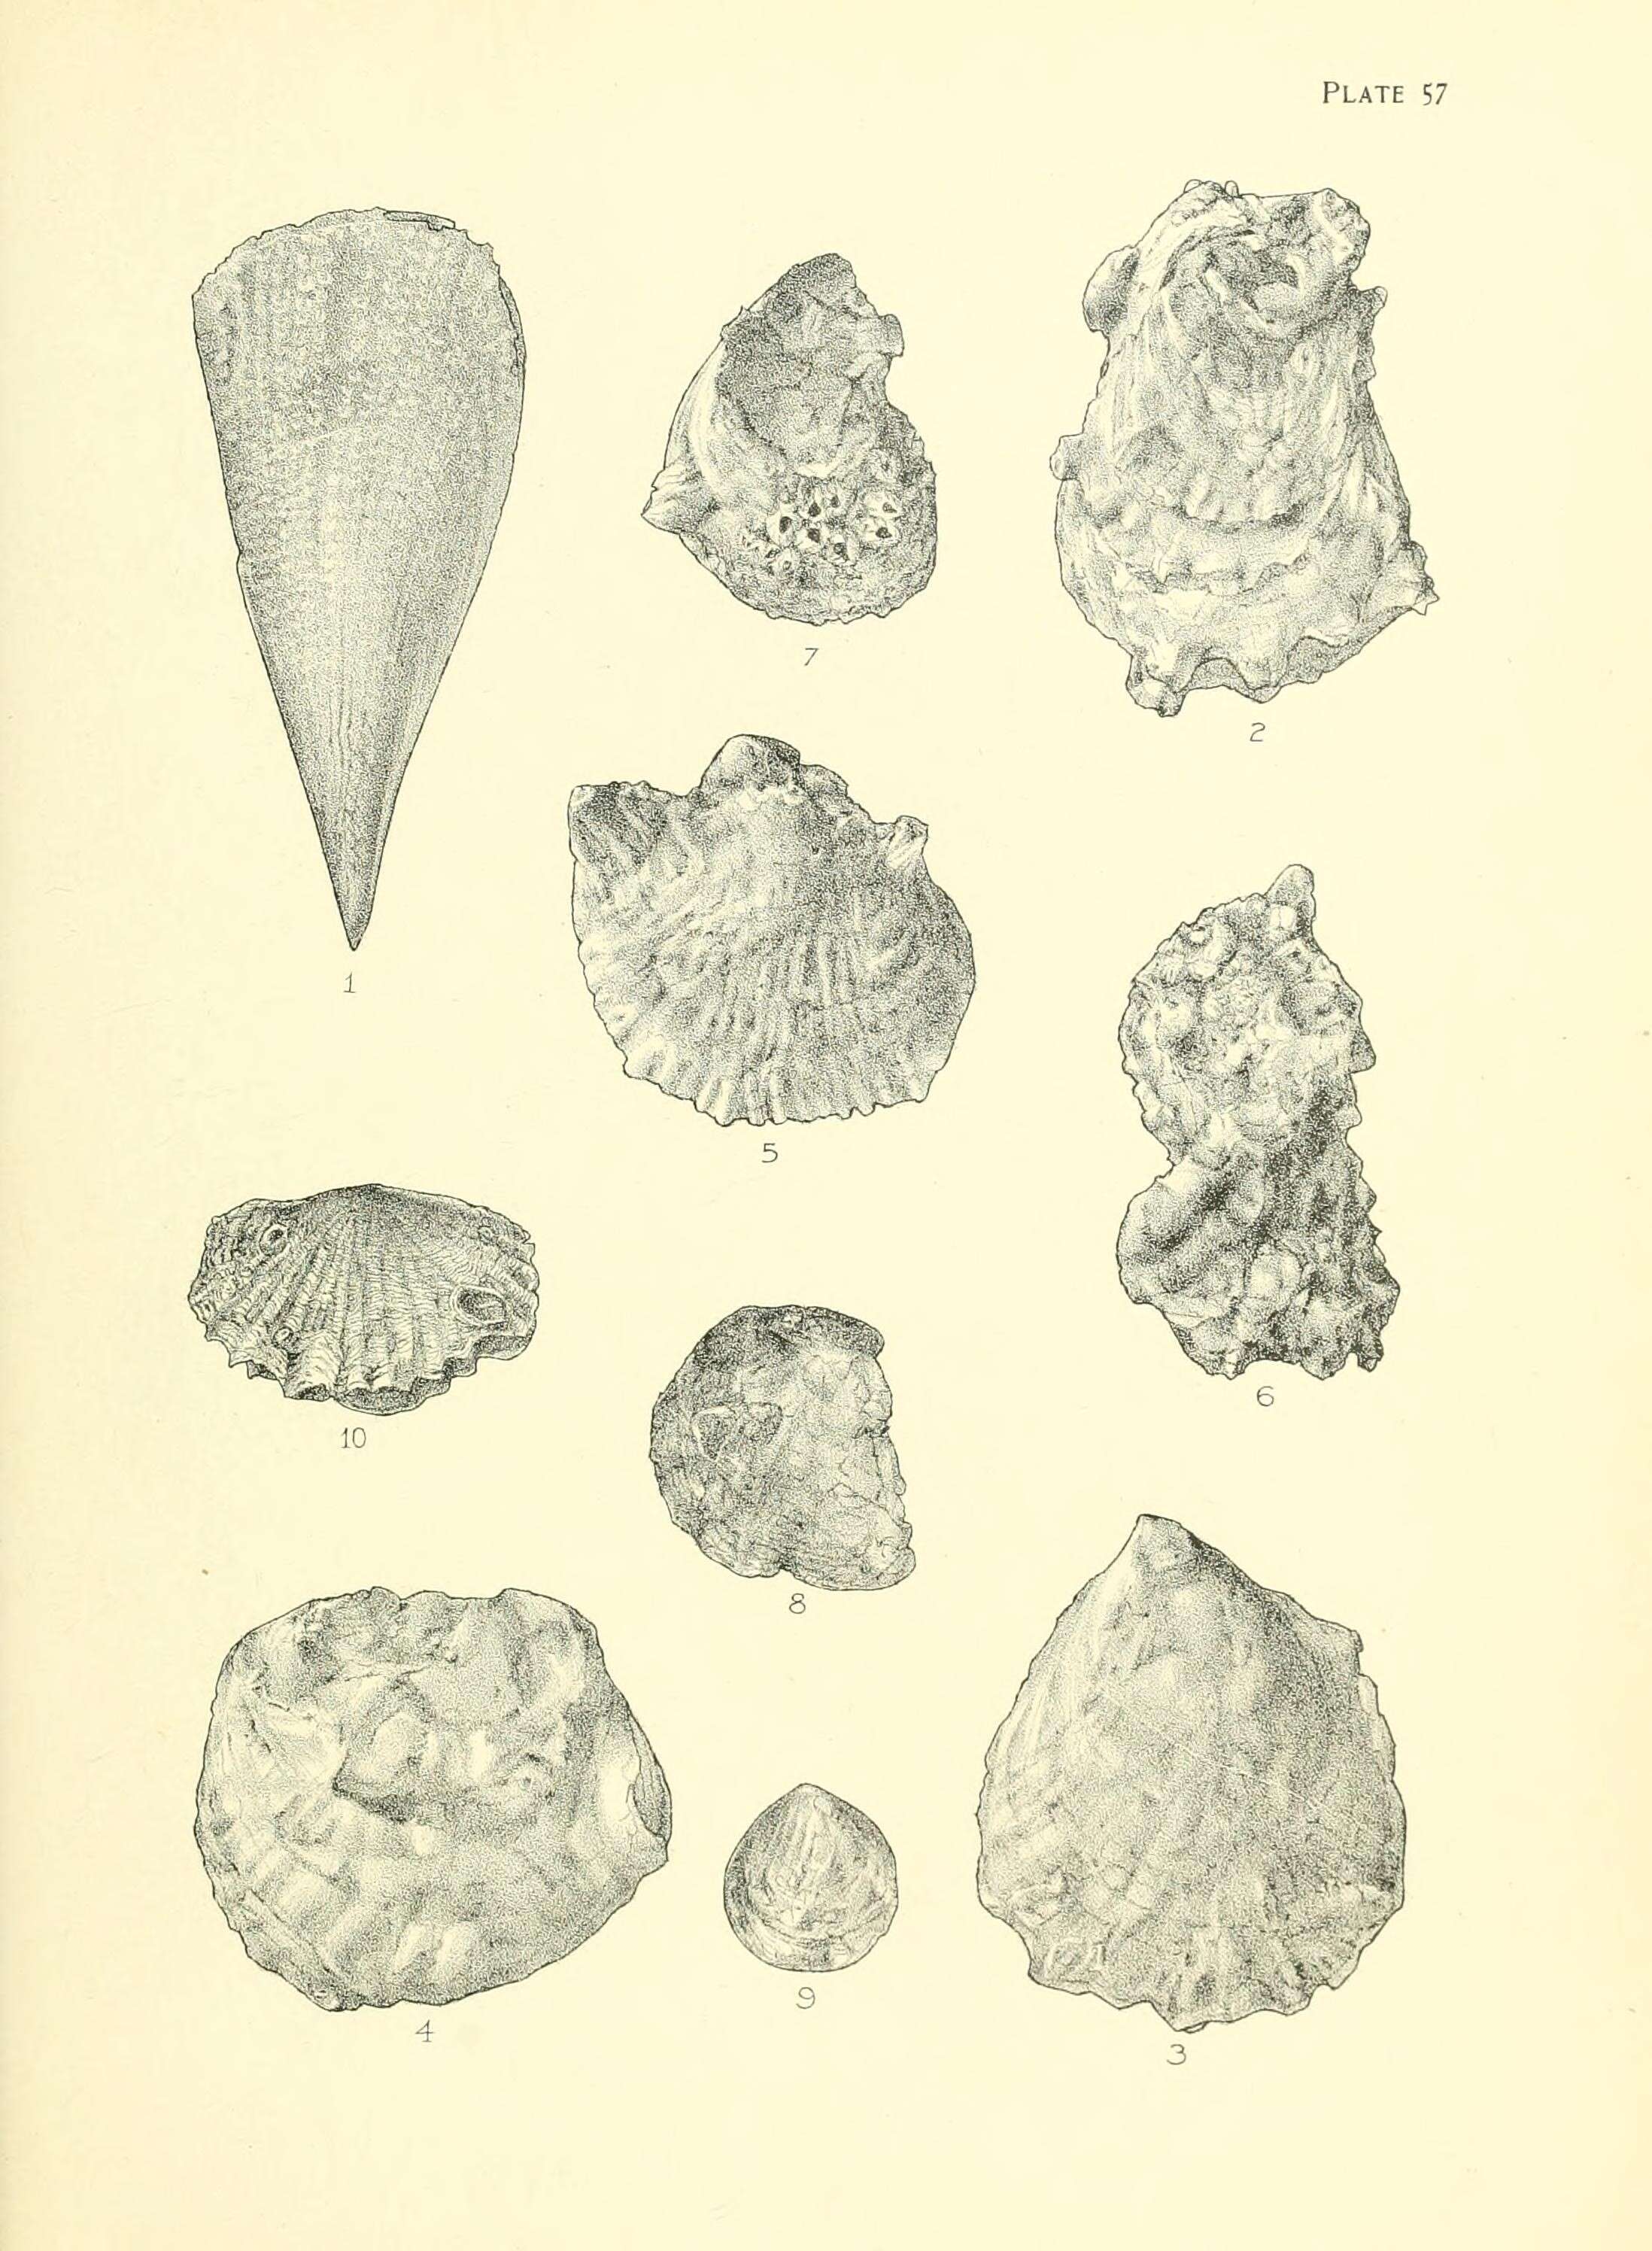 Plancia ëd Atrina zelandica (Gray 1835)